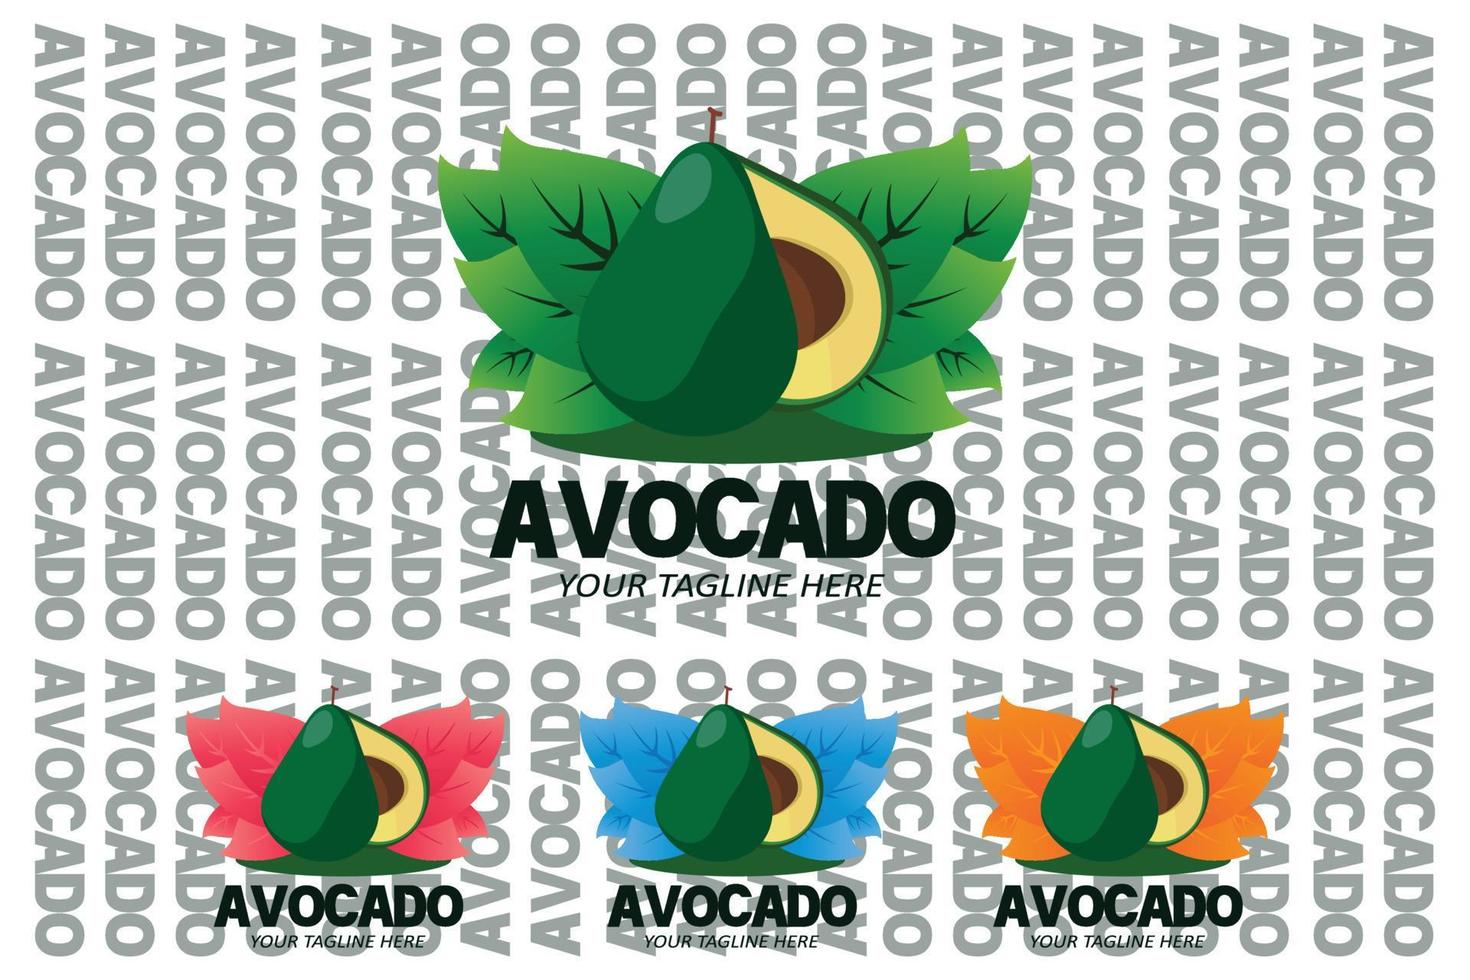 vektorillustration des avocado-fruchtlogos frisches obst in grüner farbe, erhältlich auf dem markt, kann für fruchtsaft oder für die körpergesundheit, siebdruckdesign, aufkleber, banner, obstunternehmen sein vektor